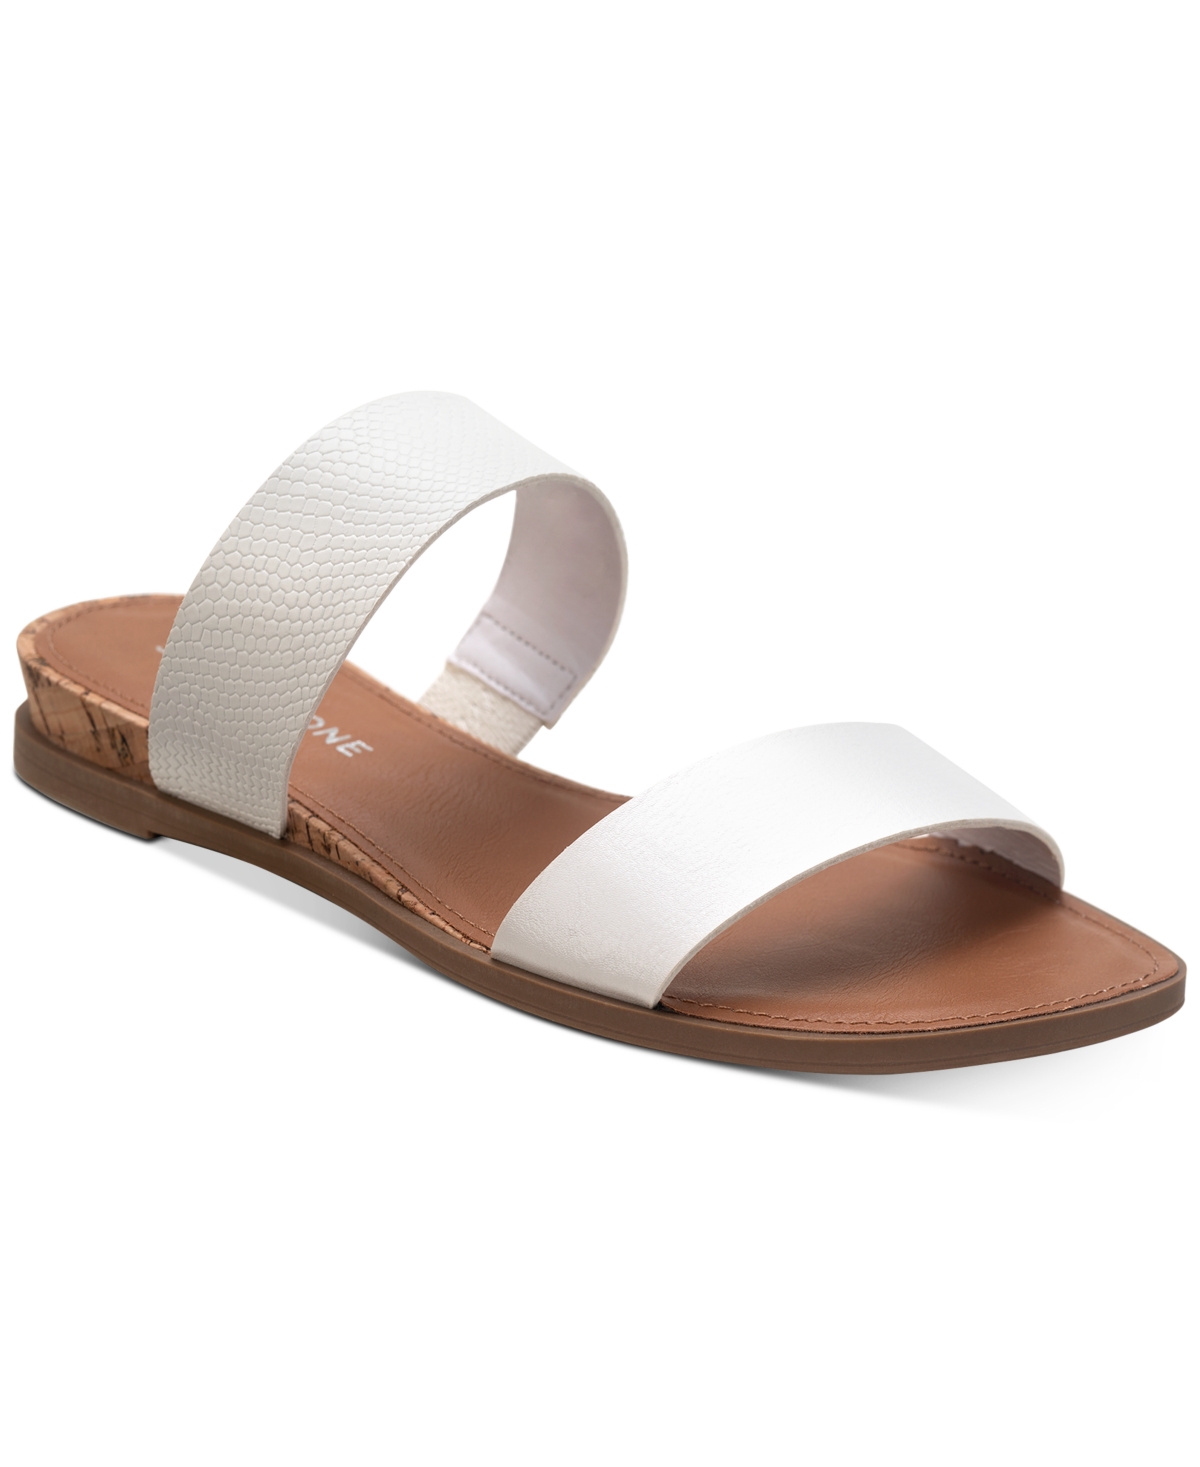 Sun + Stone Easten Slide Sandals, Created For Macy's In White